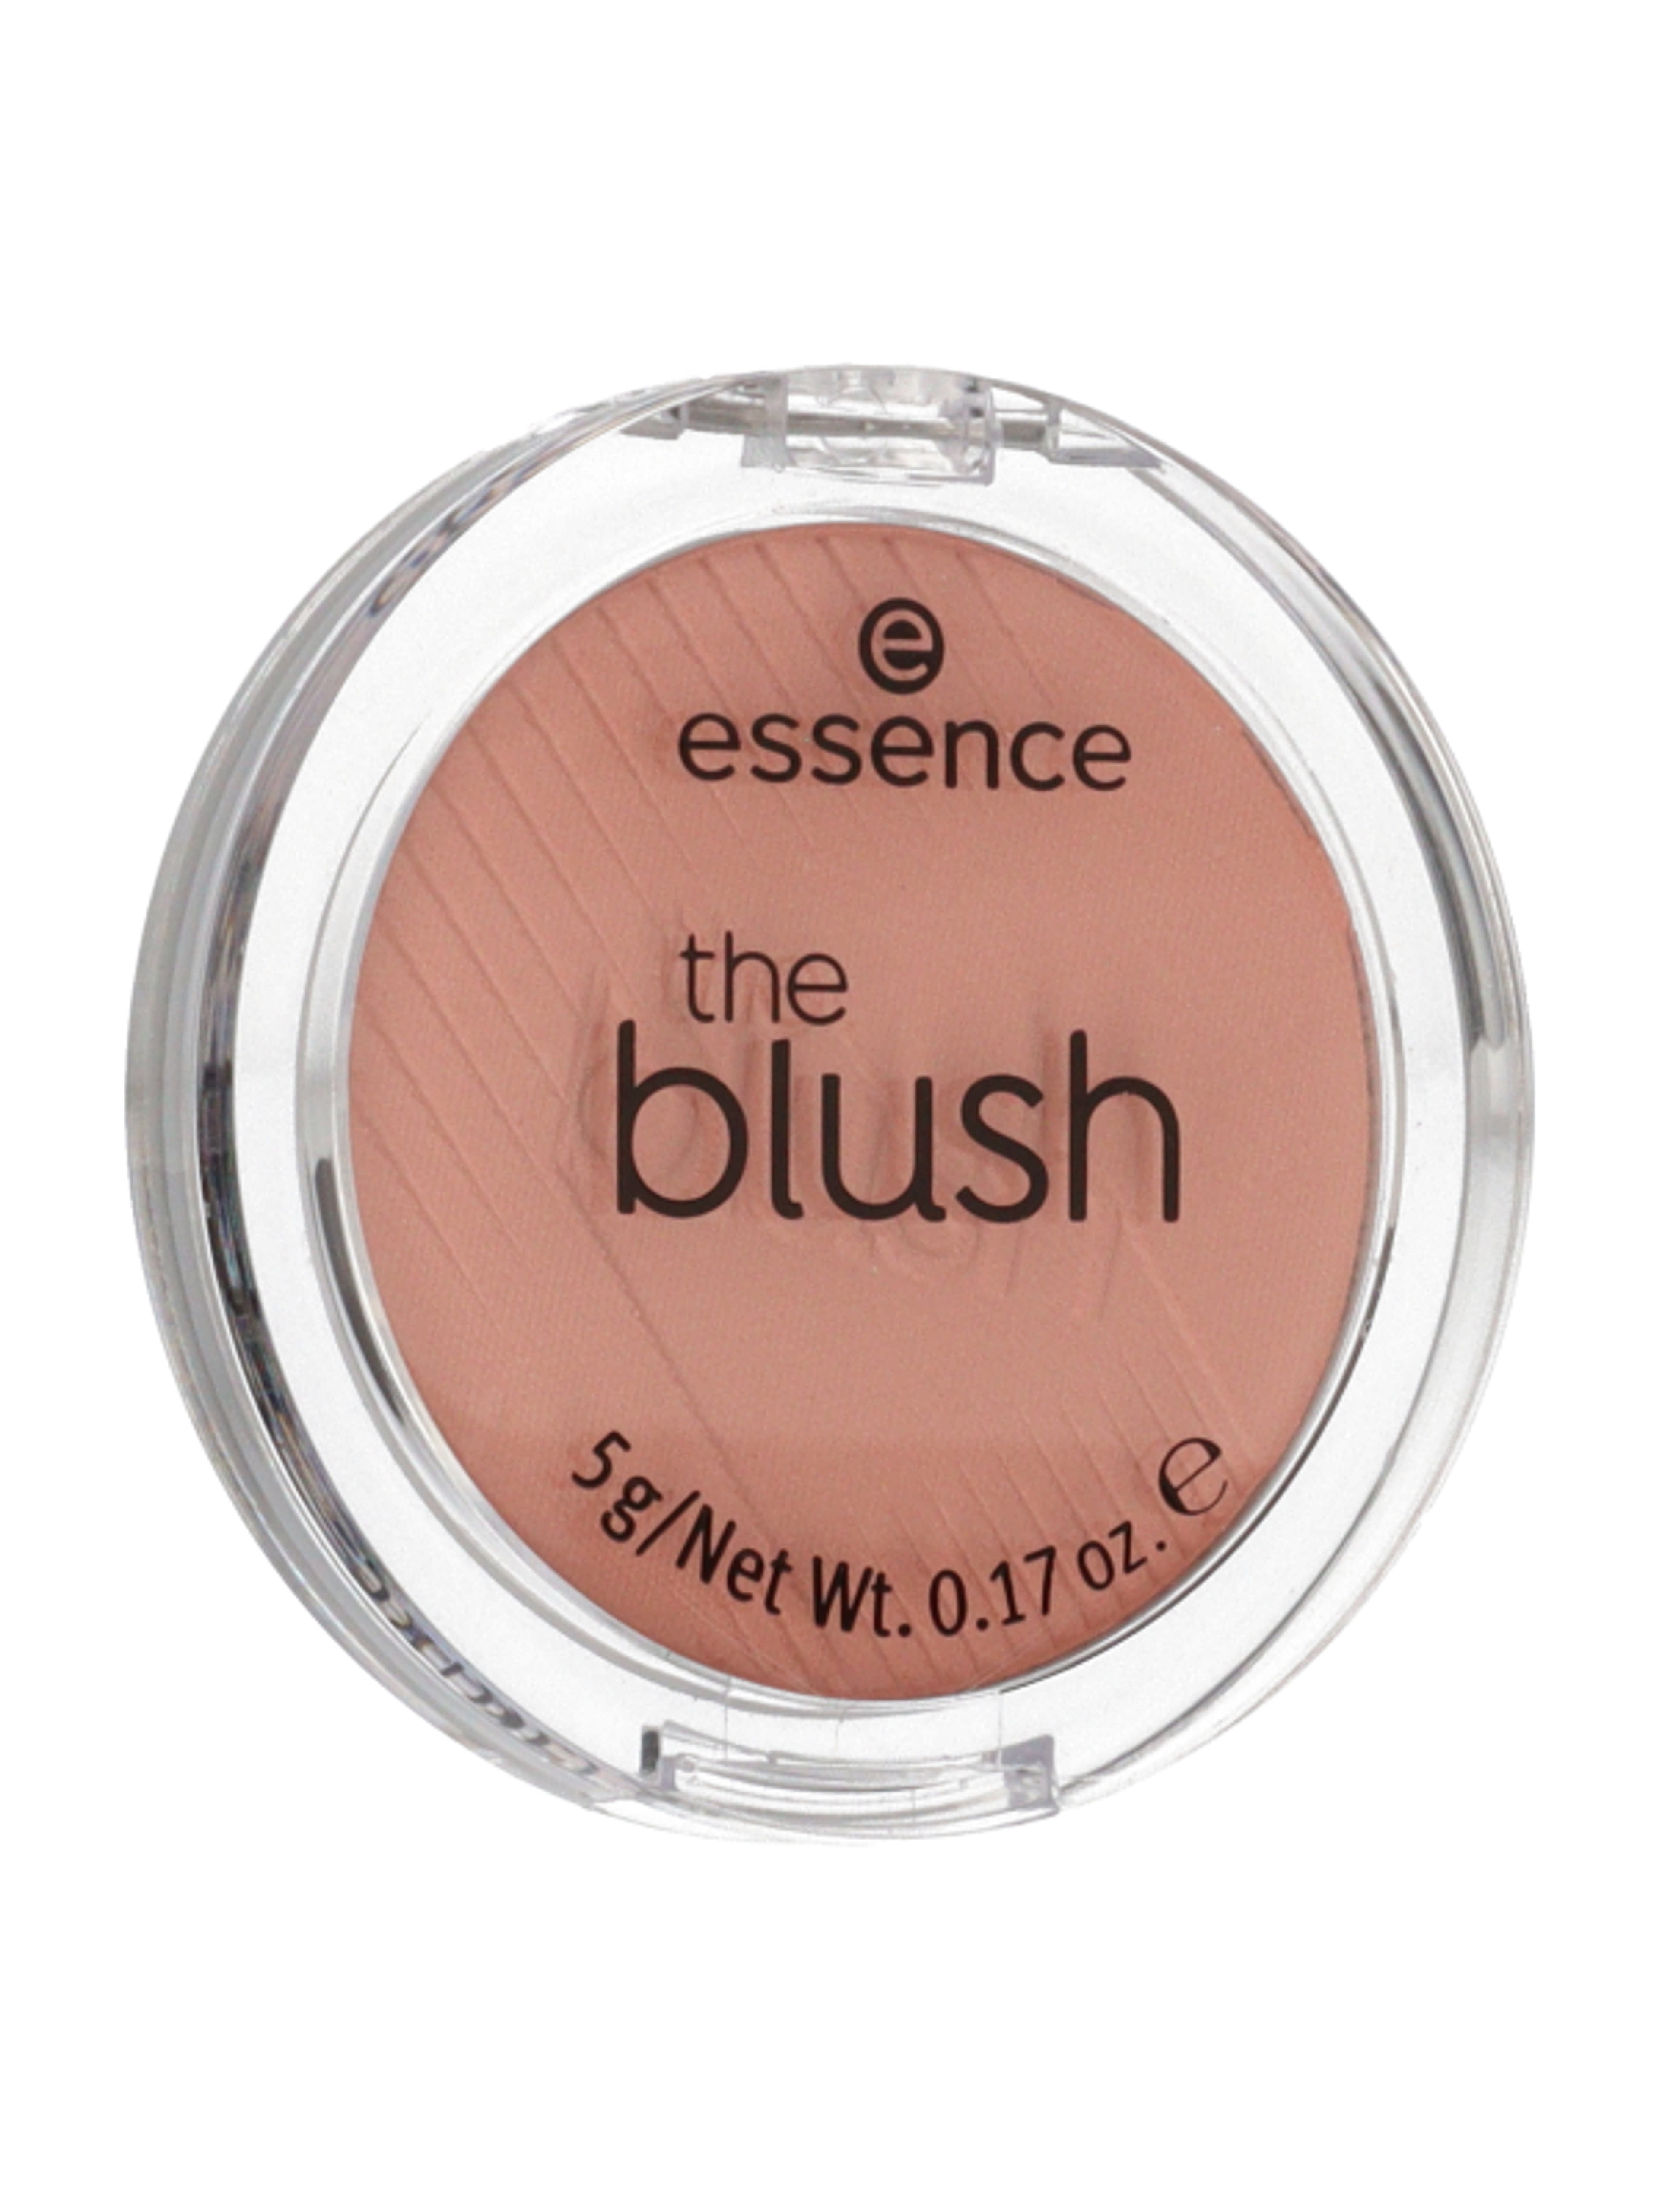 Essence Hello The Blush! pirosító /90 bedazzling - 1 db-2